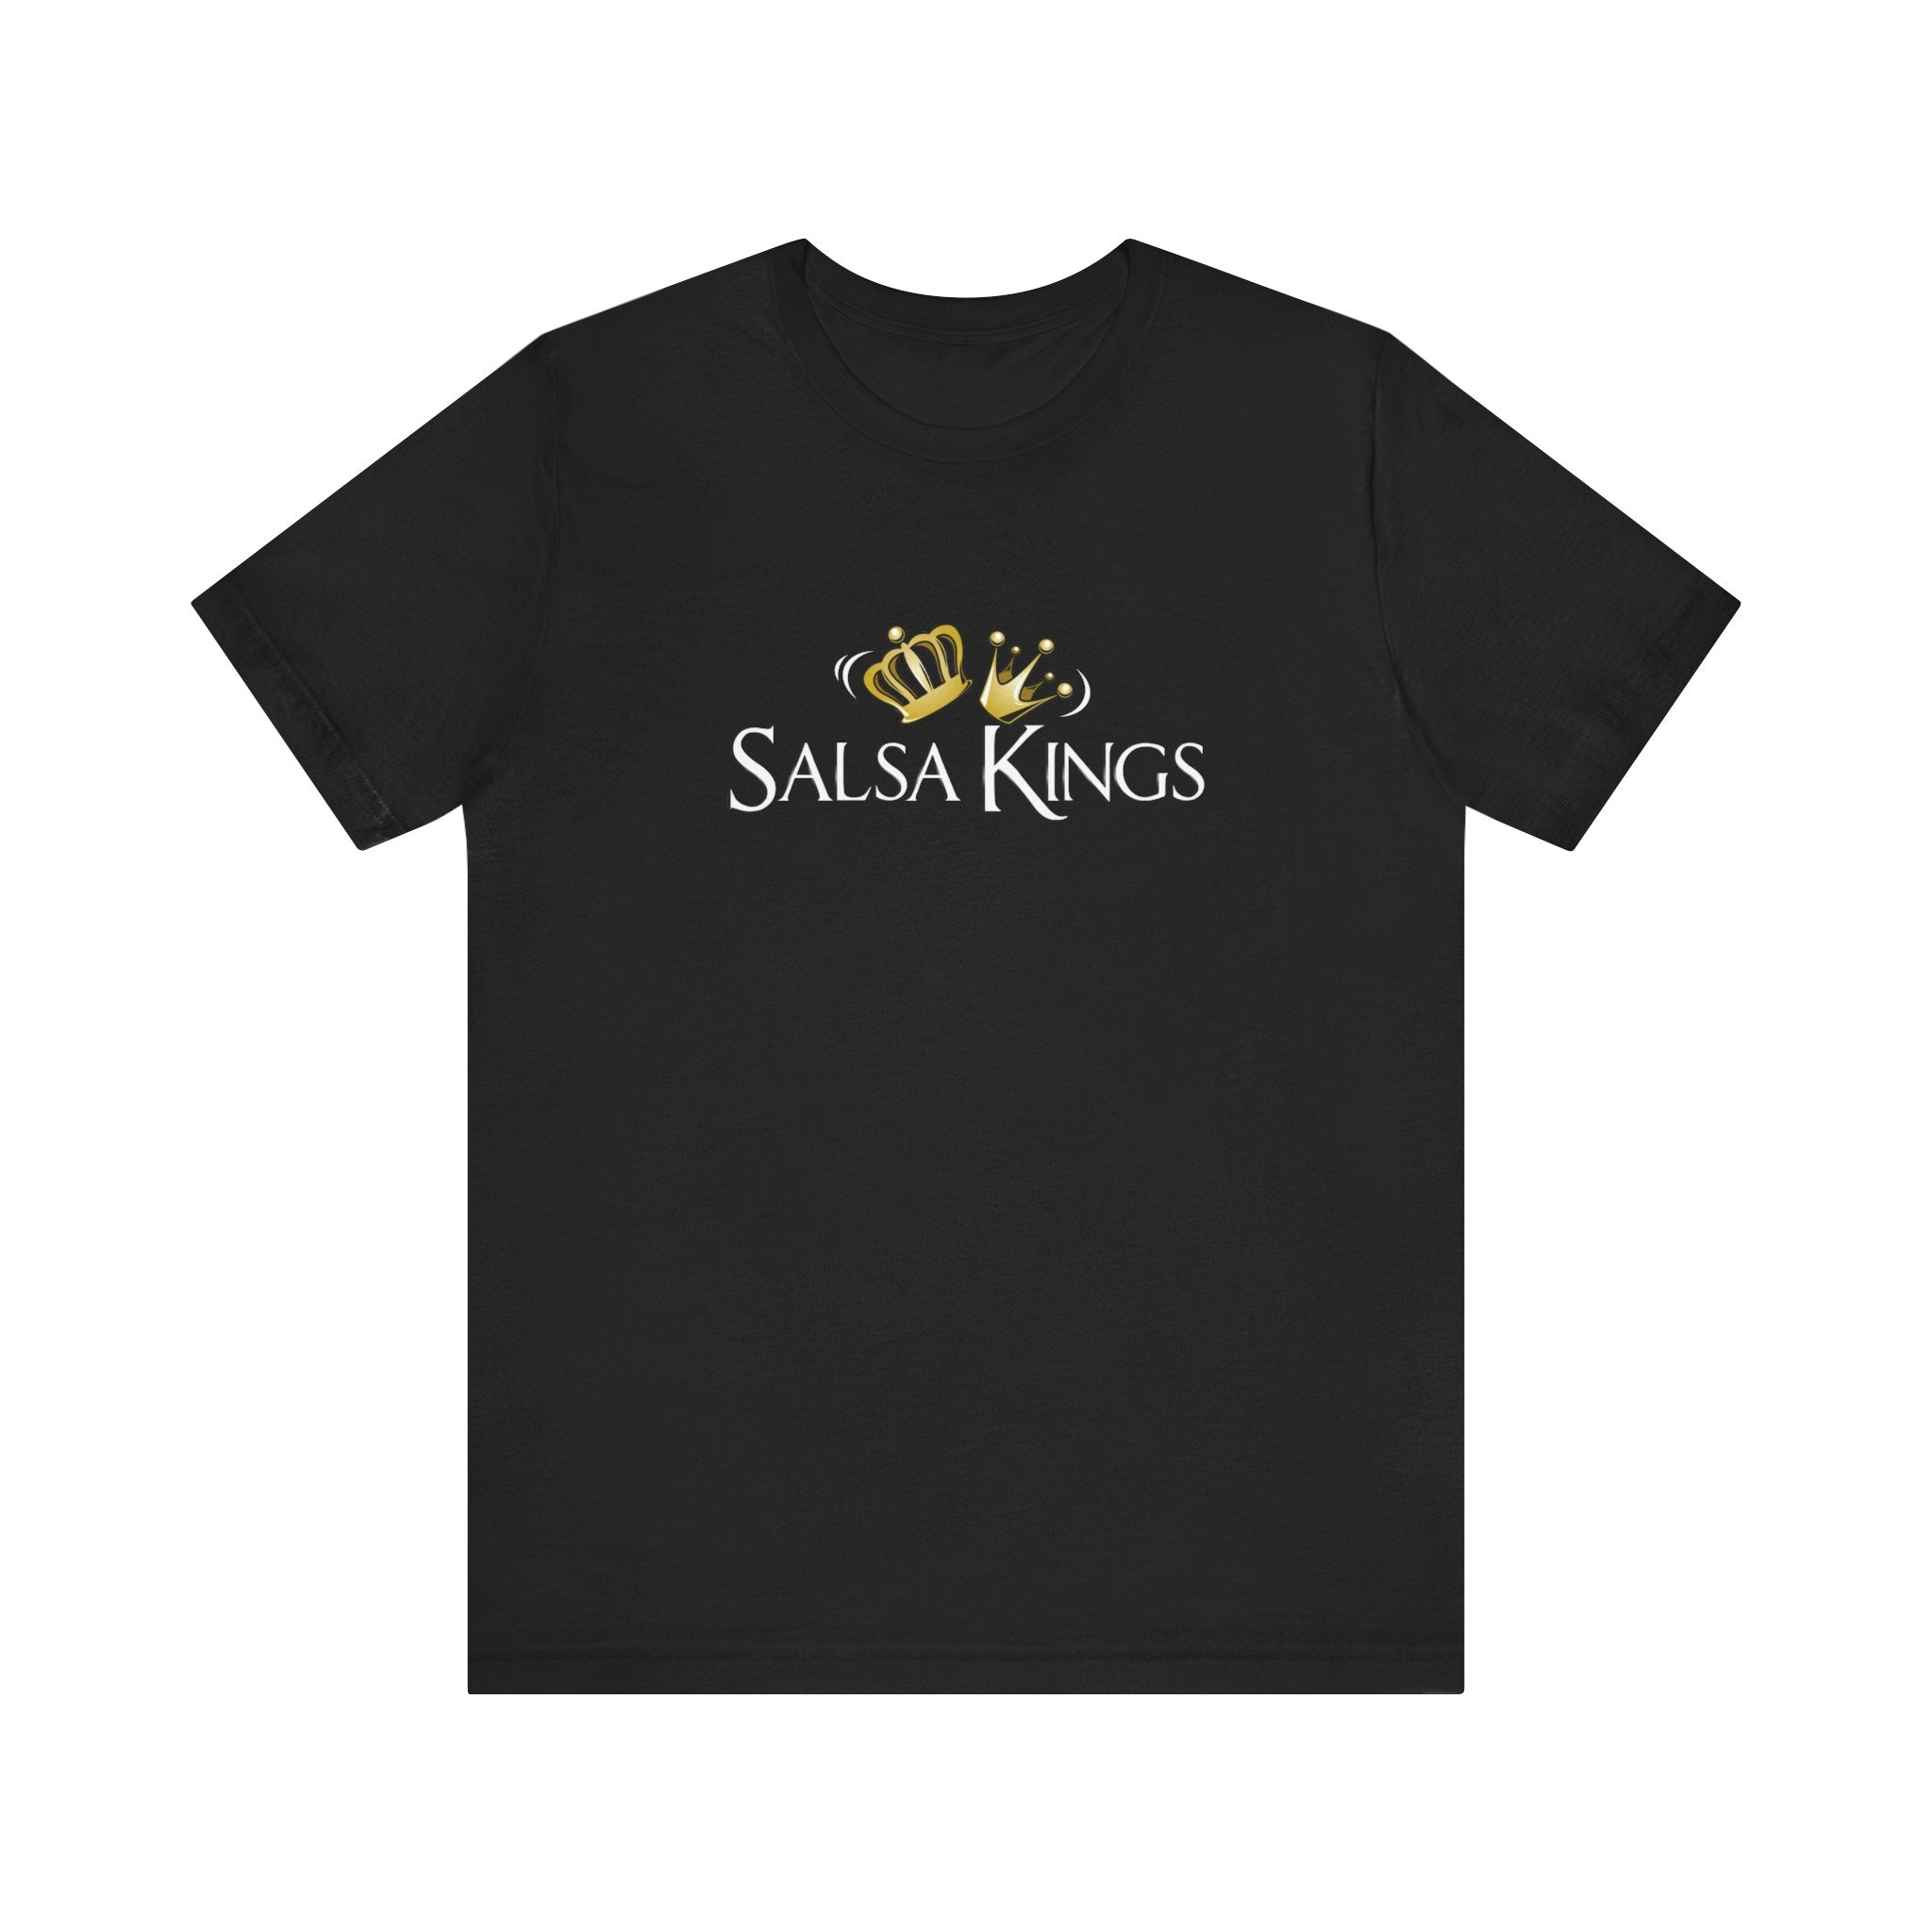 Student Salsa Kings Tshirt